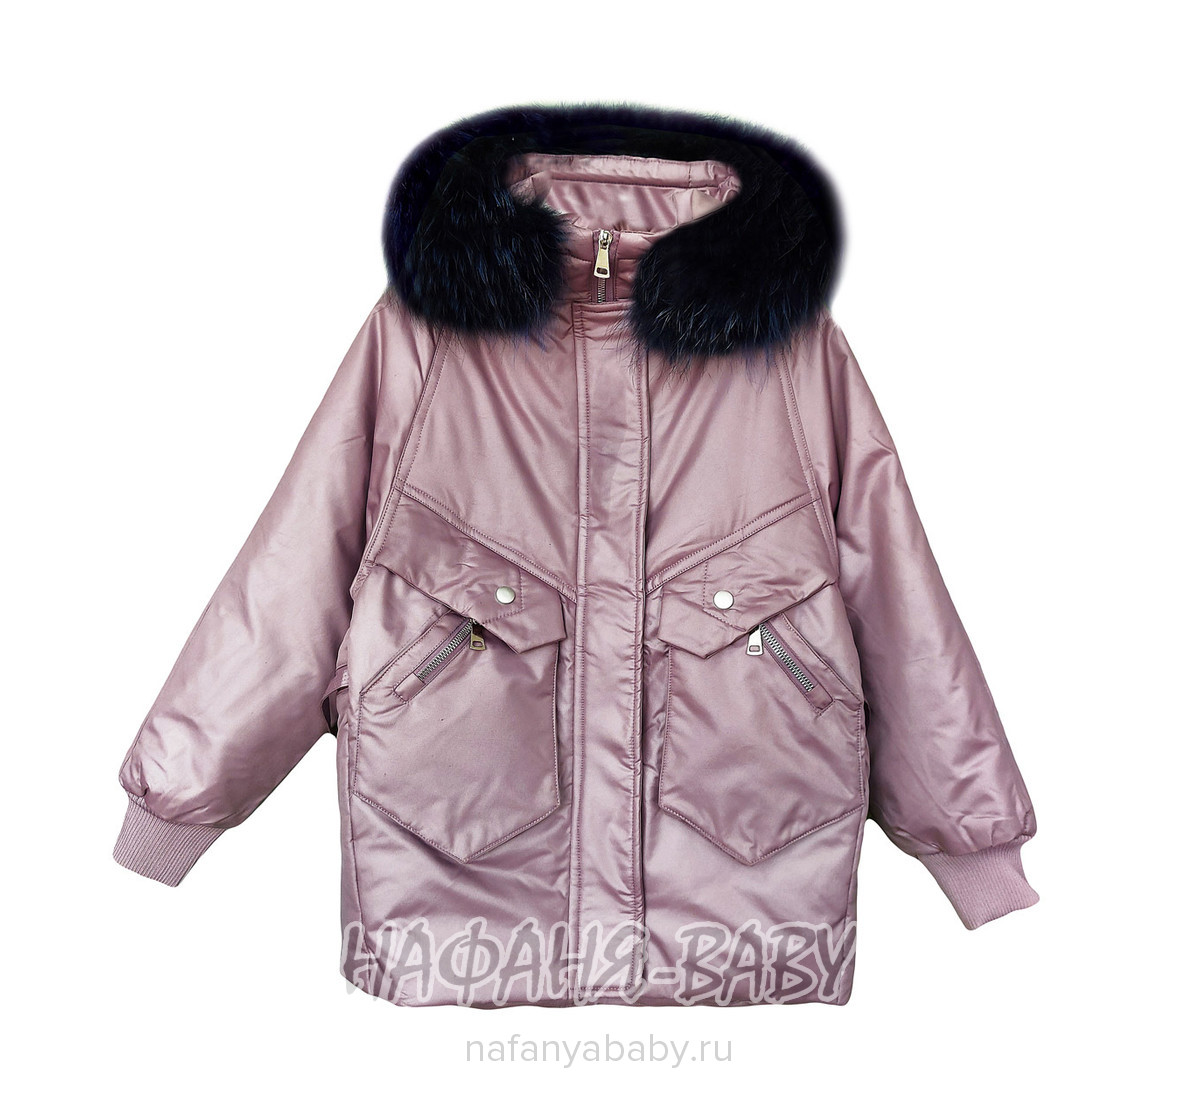 Зимняя удлиненная куртка-пуховик MAY JM, купить в интернет магазине Нафаня. арт: 9205.